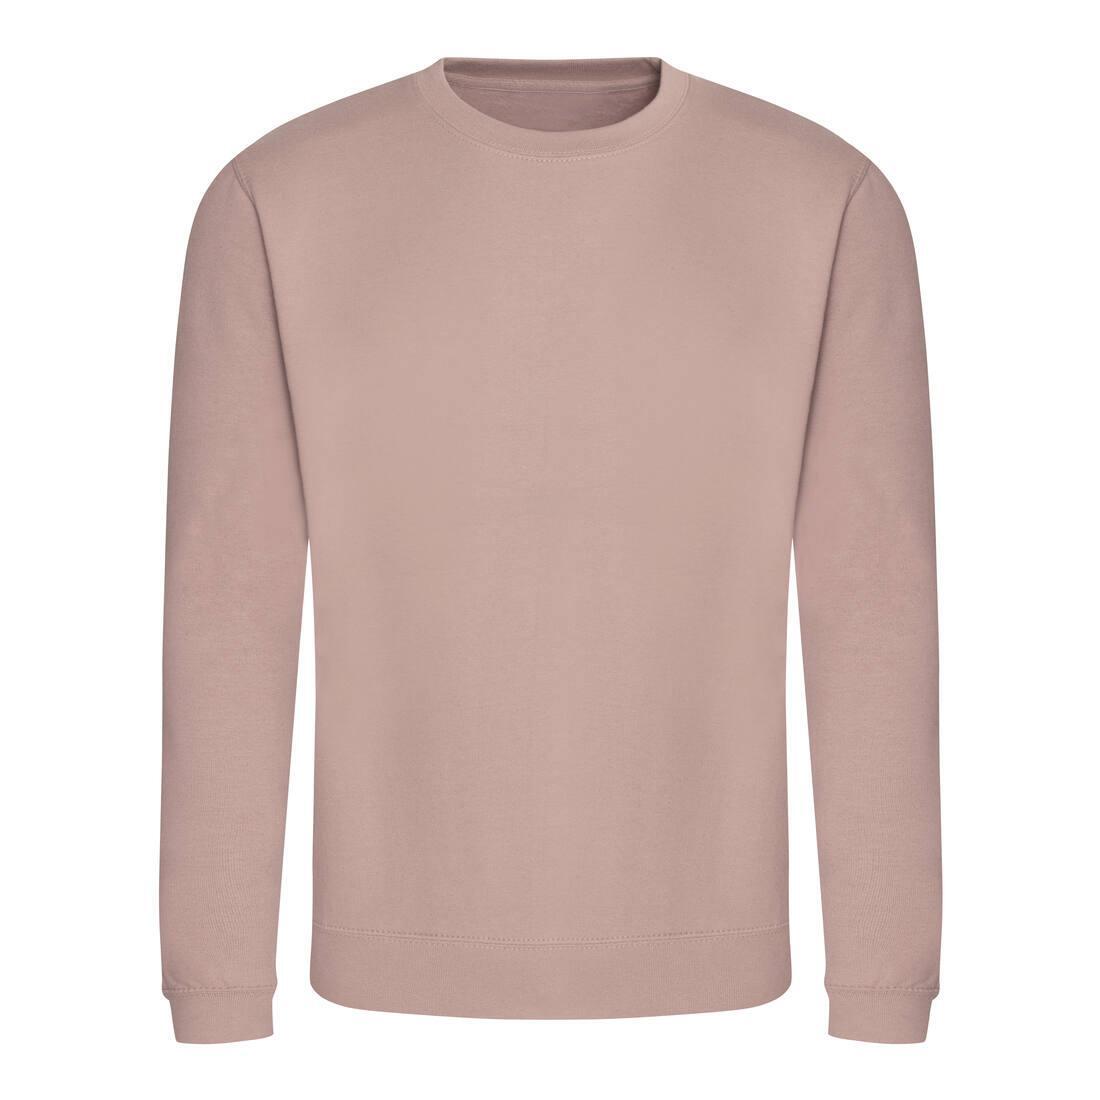 Sweater voor heren dusty roze Just Hoods te personaliseren